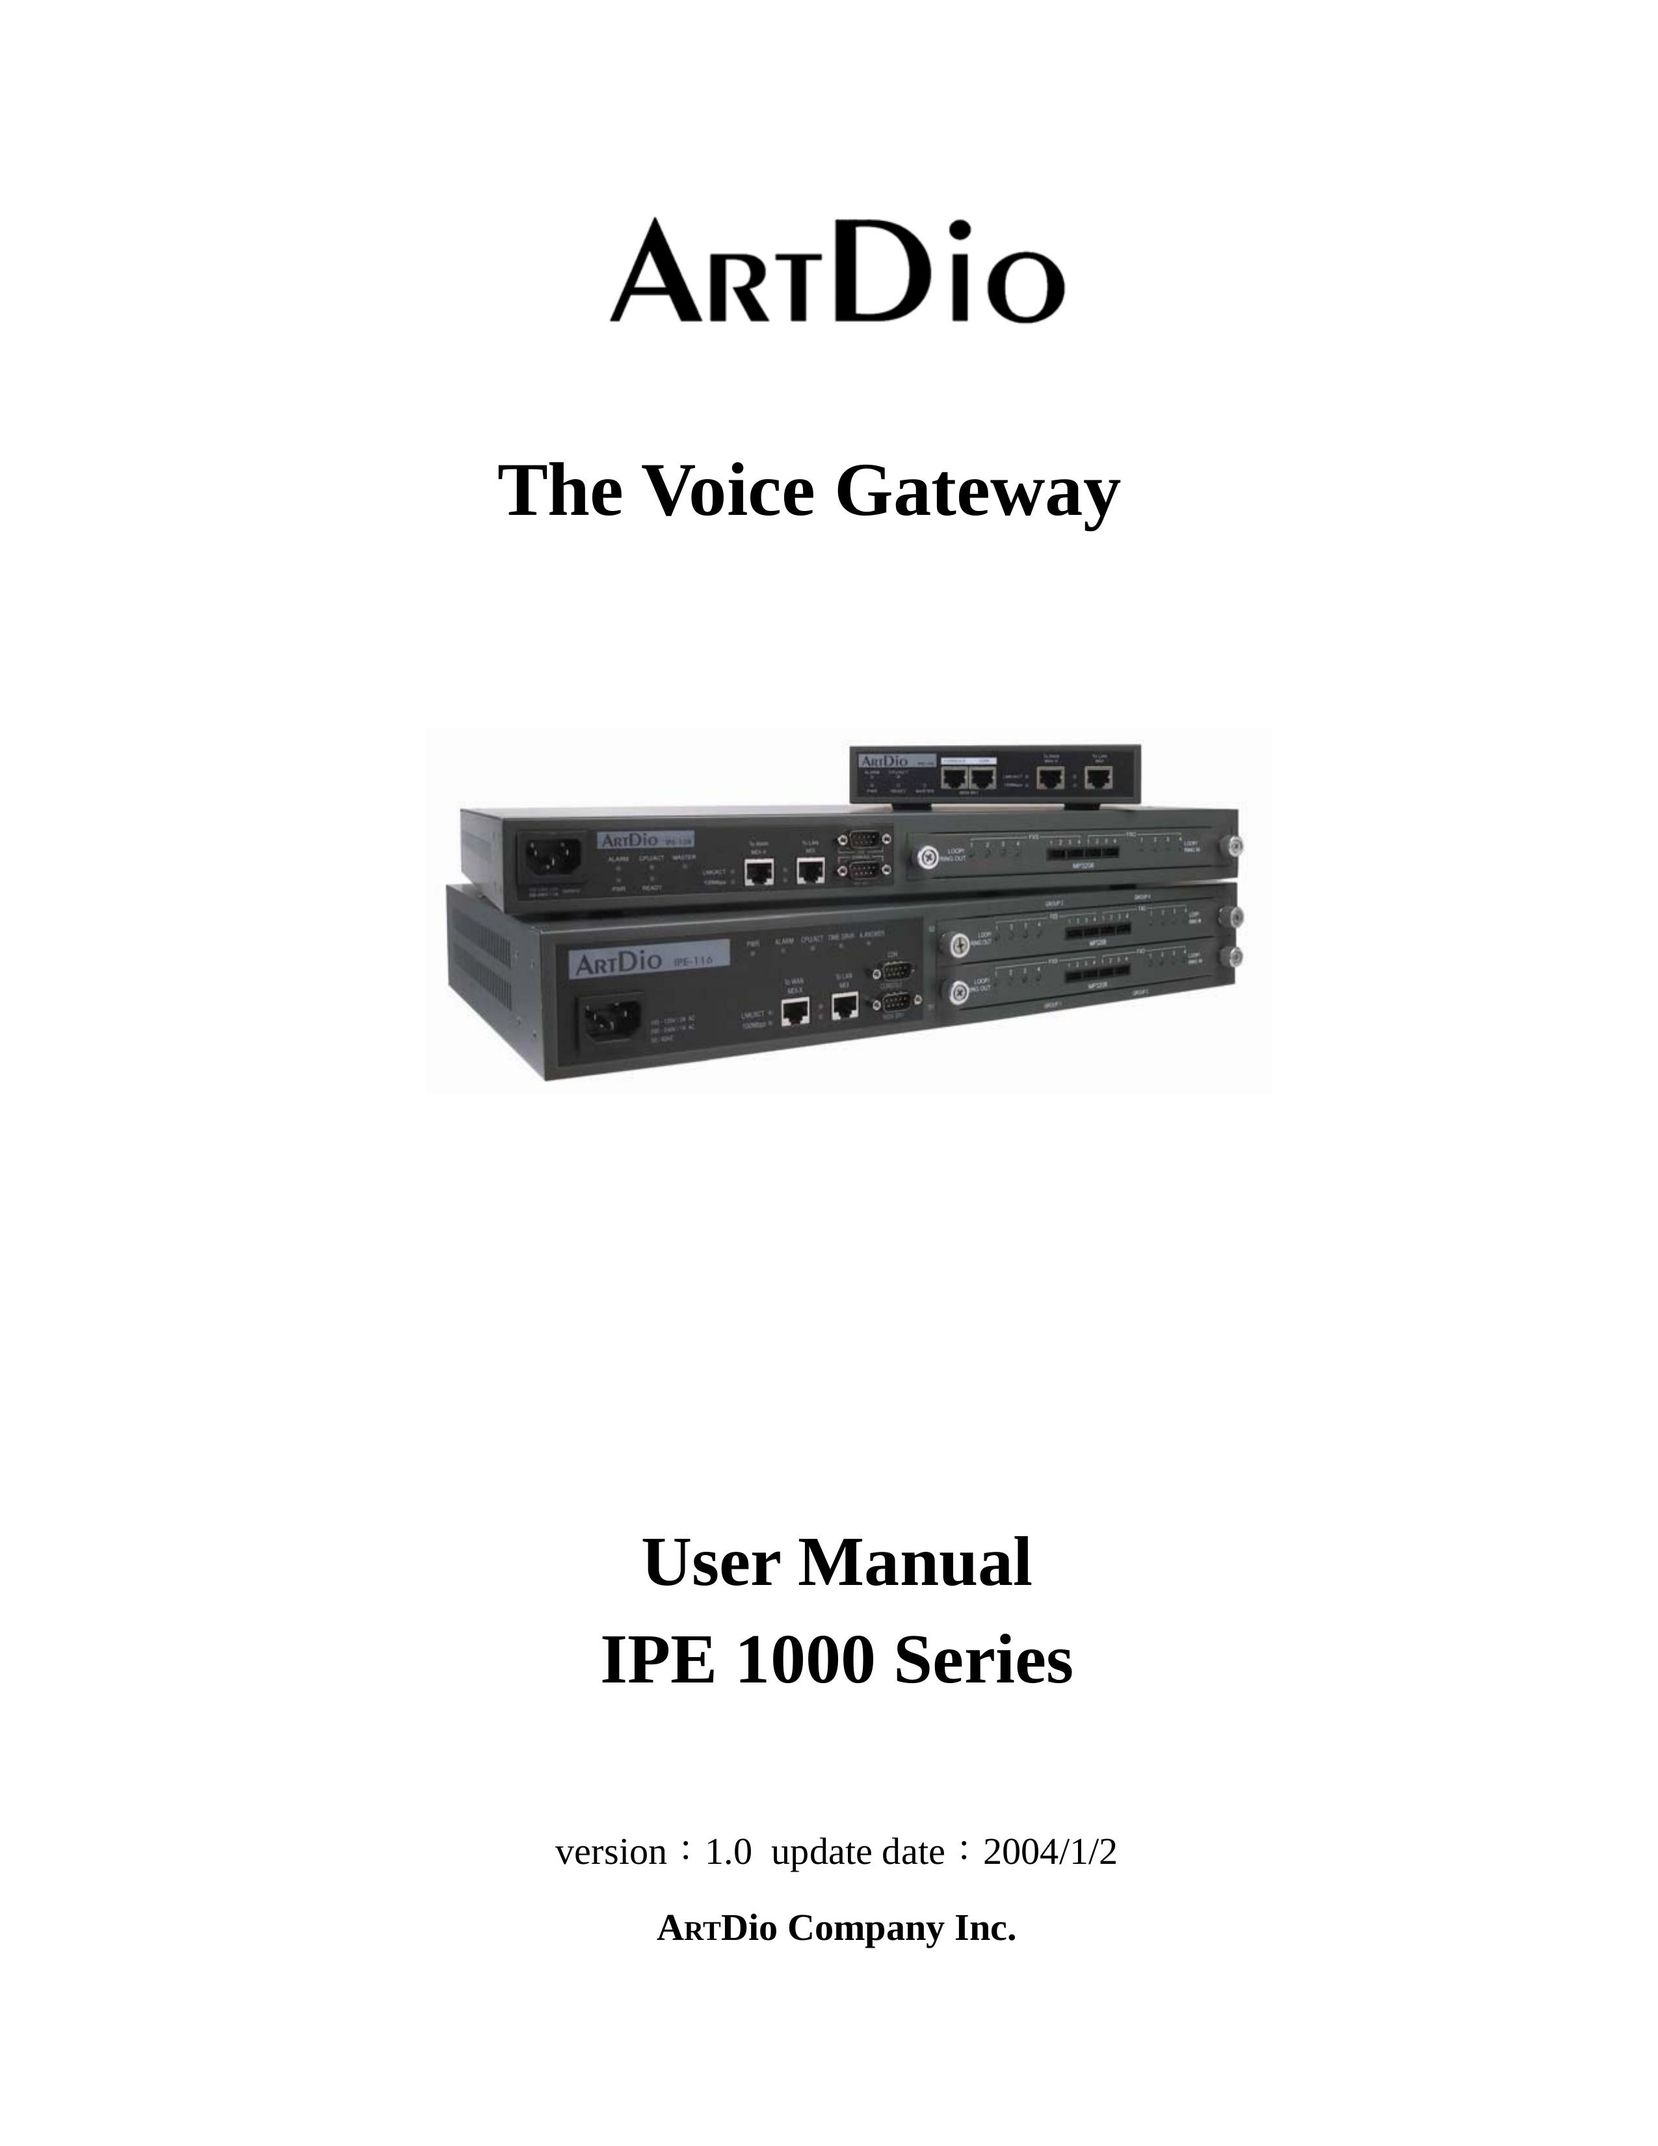 ArtDio IPE 1000 Network Card User Manual